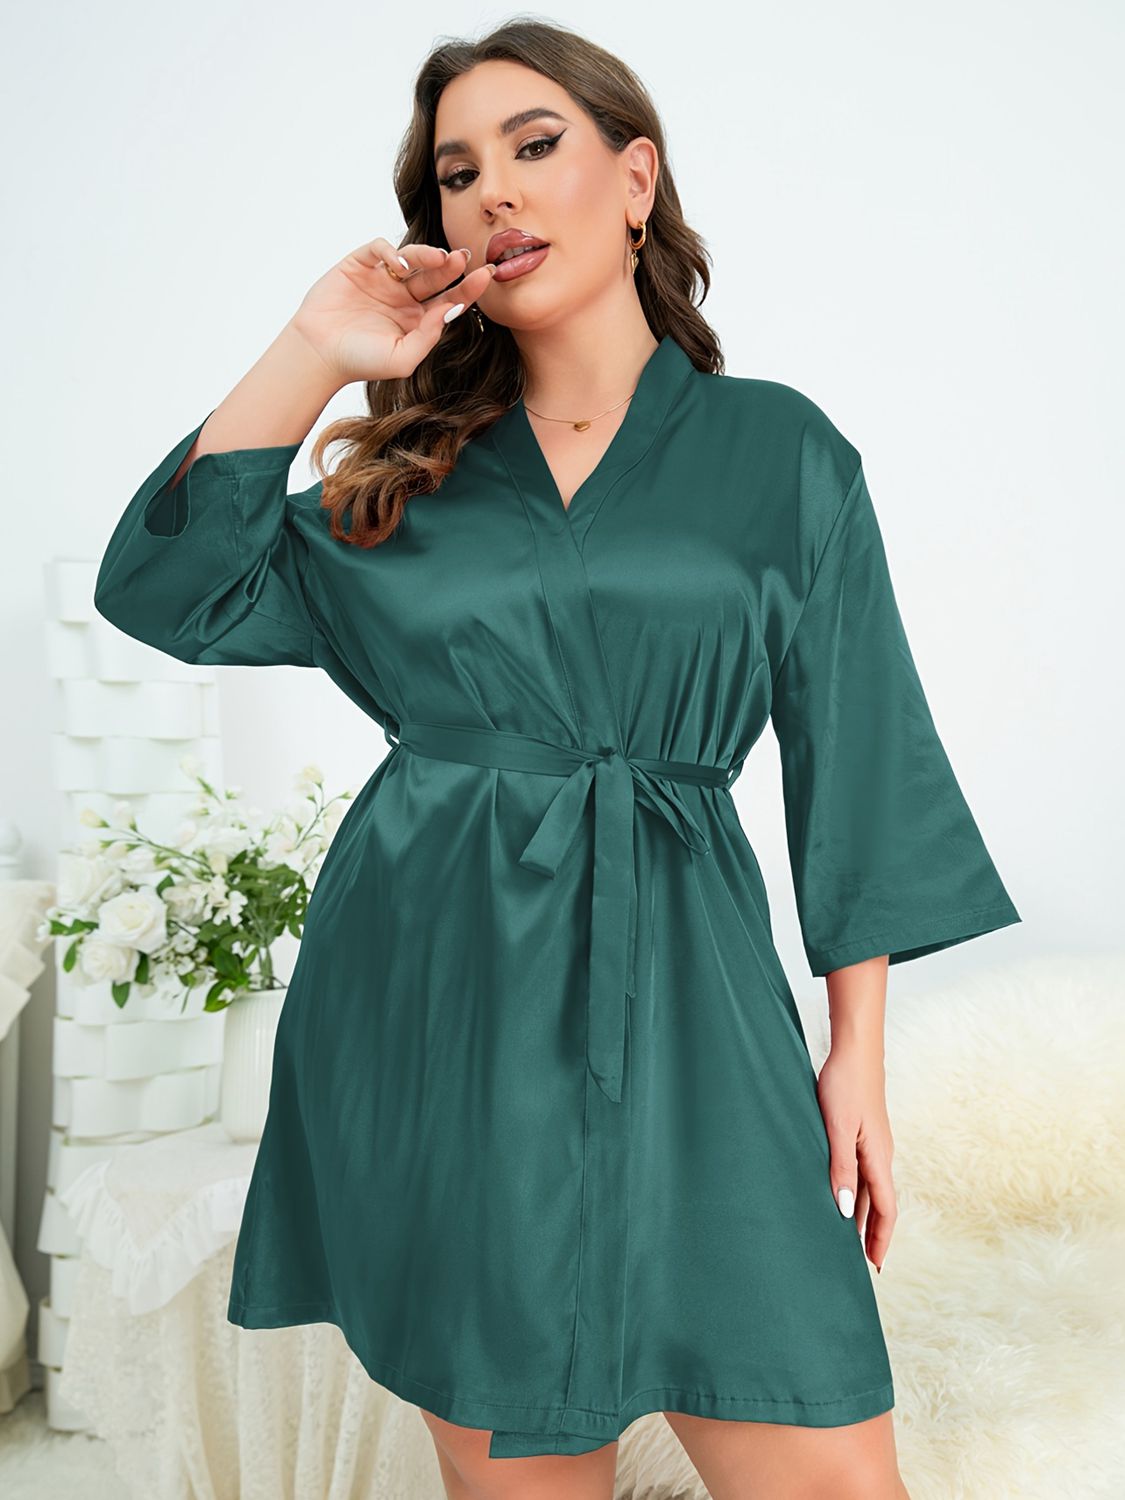 Model wearing green plus size robe